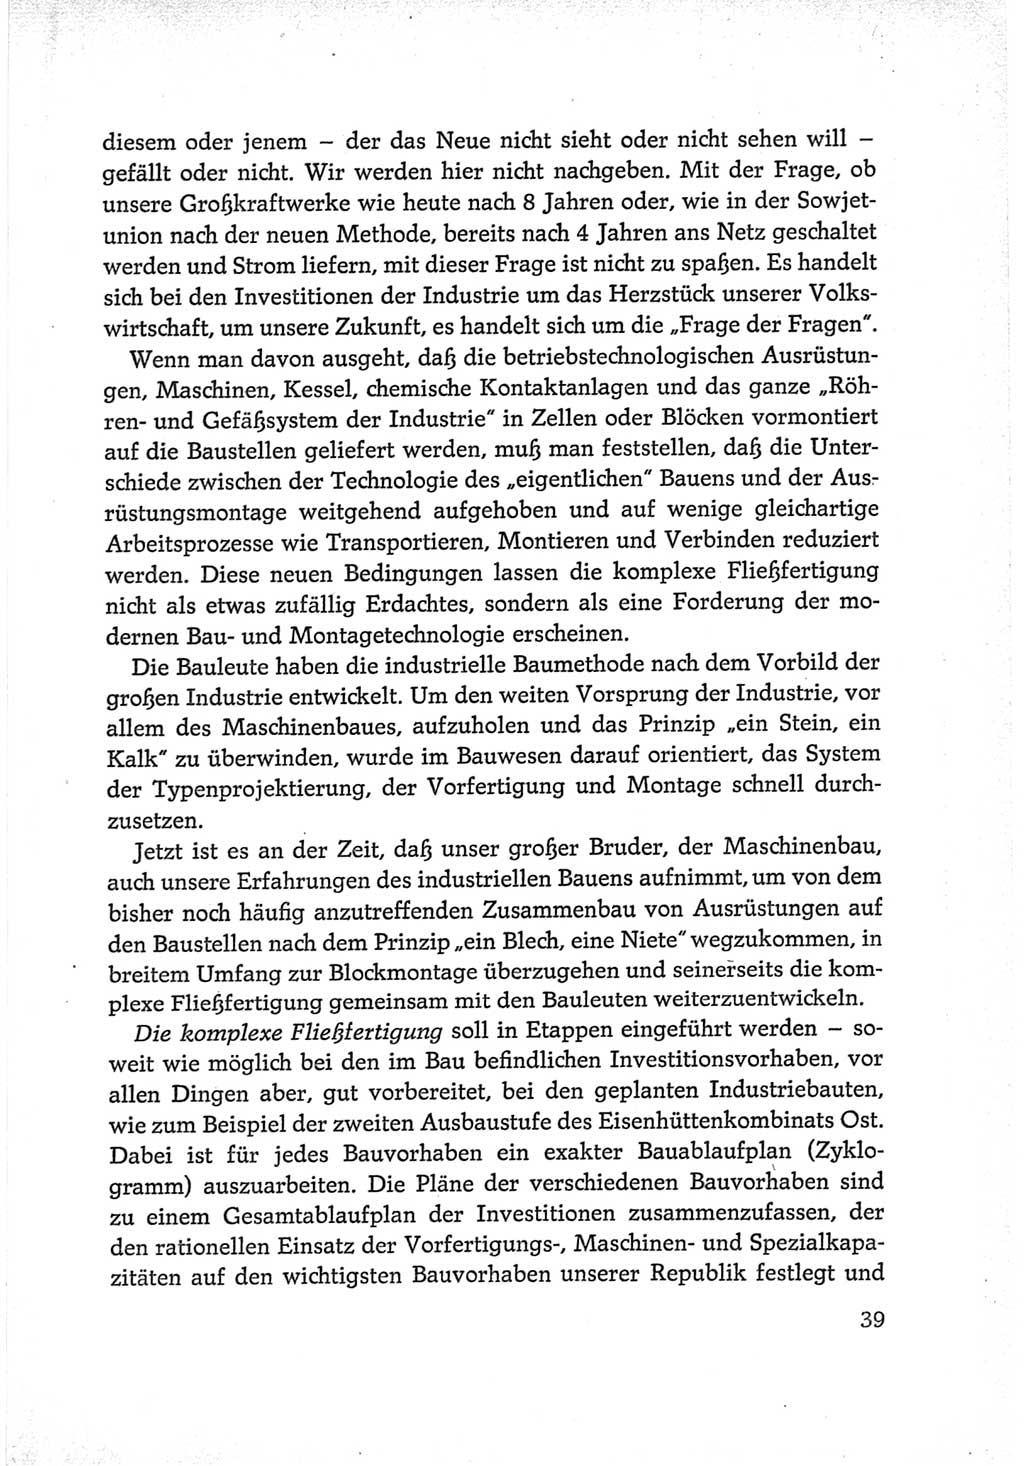 Protokoll der Verhandlungen des Ⅵ. Parteitages der Sozialistischen Einheitspartei Deutschlands (SED) [Deutsche Demokratische Republik (DDR)] 1963, Band Ⅱ, Seite 39 (Prot. Verh. Ⅵ. PT SED DDR 1963, Bd. Ⅱ, S. 39)